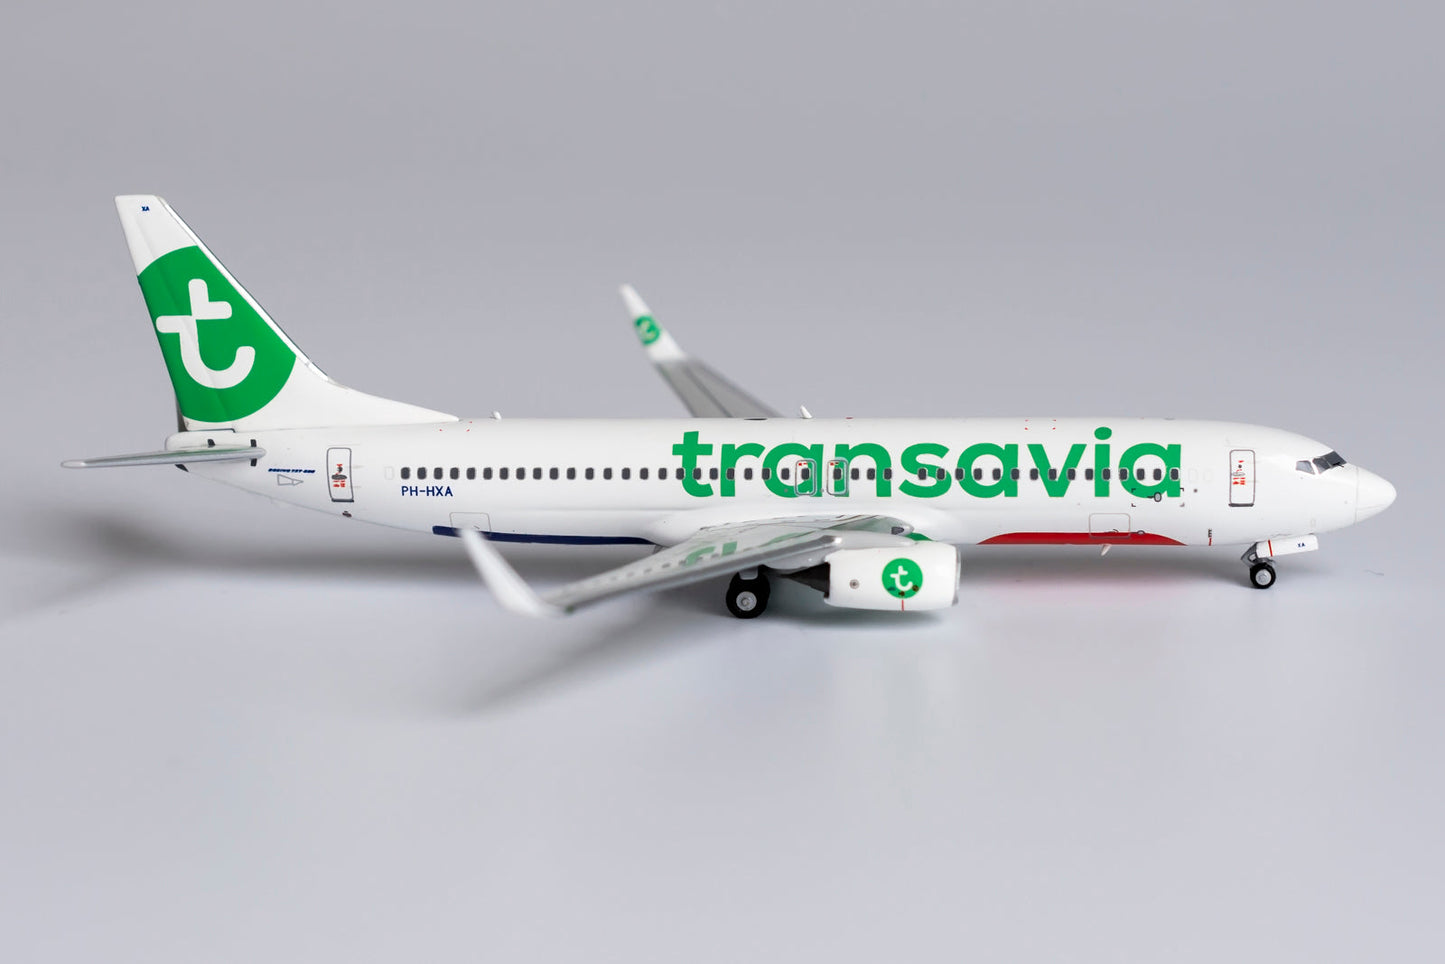 1/400 Transavia Airlines B 737-800/w NG Models 58128